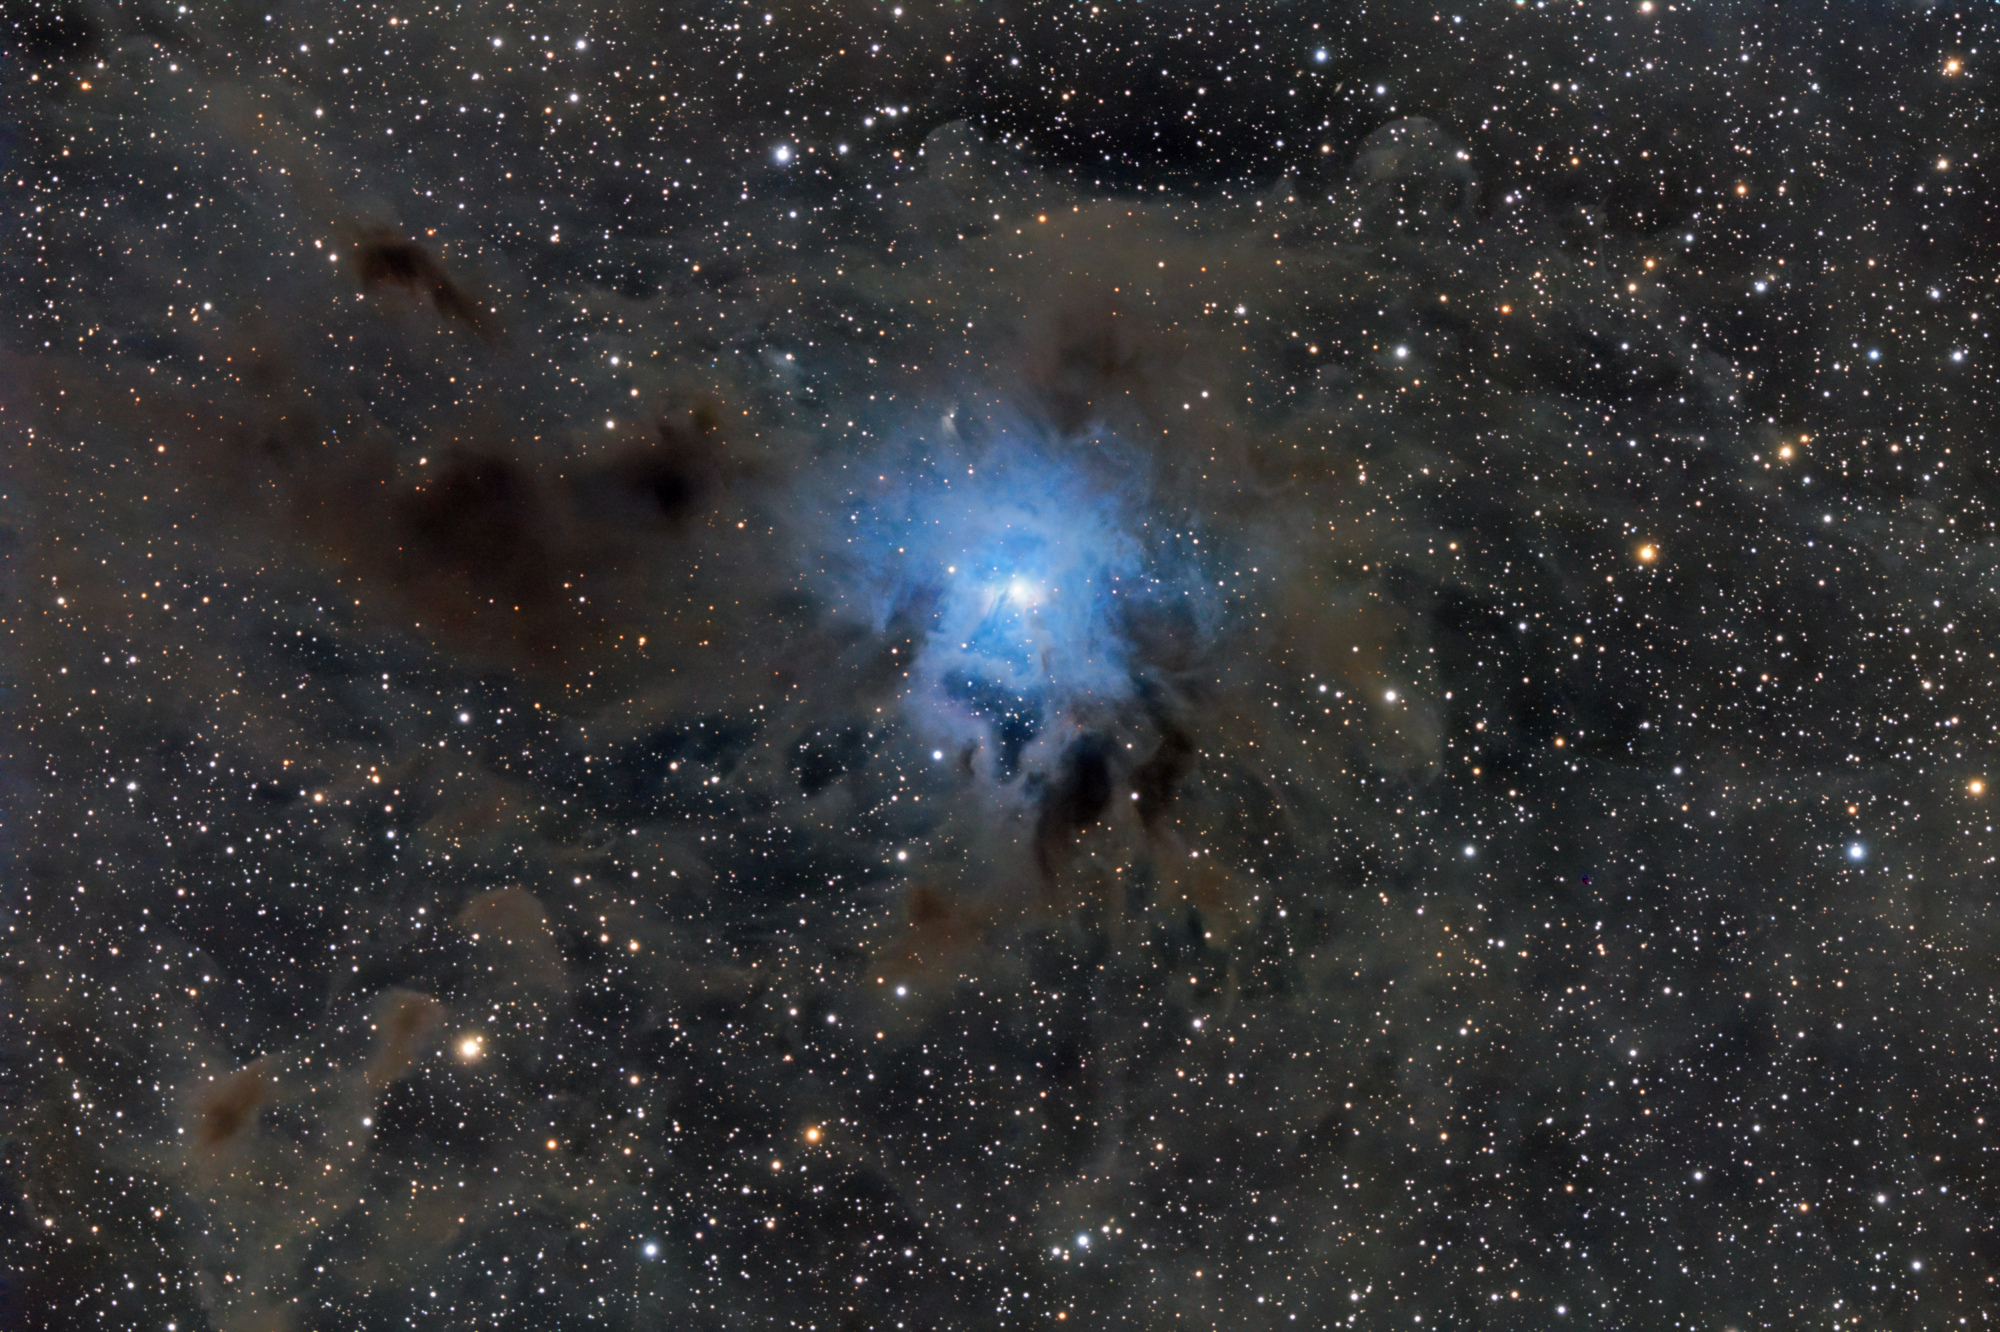 NGC_7023_SIRIL-1-iris-étir-cs5-2-FINAL-2-x.jpg